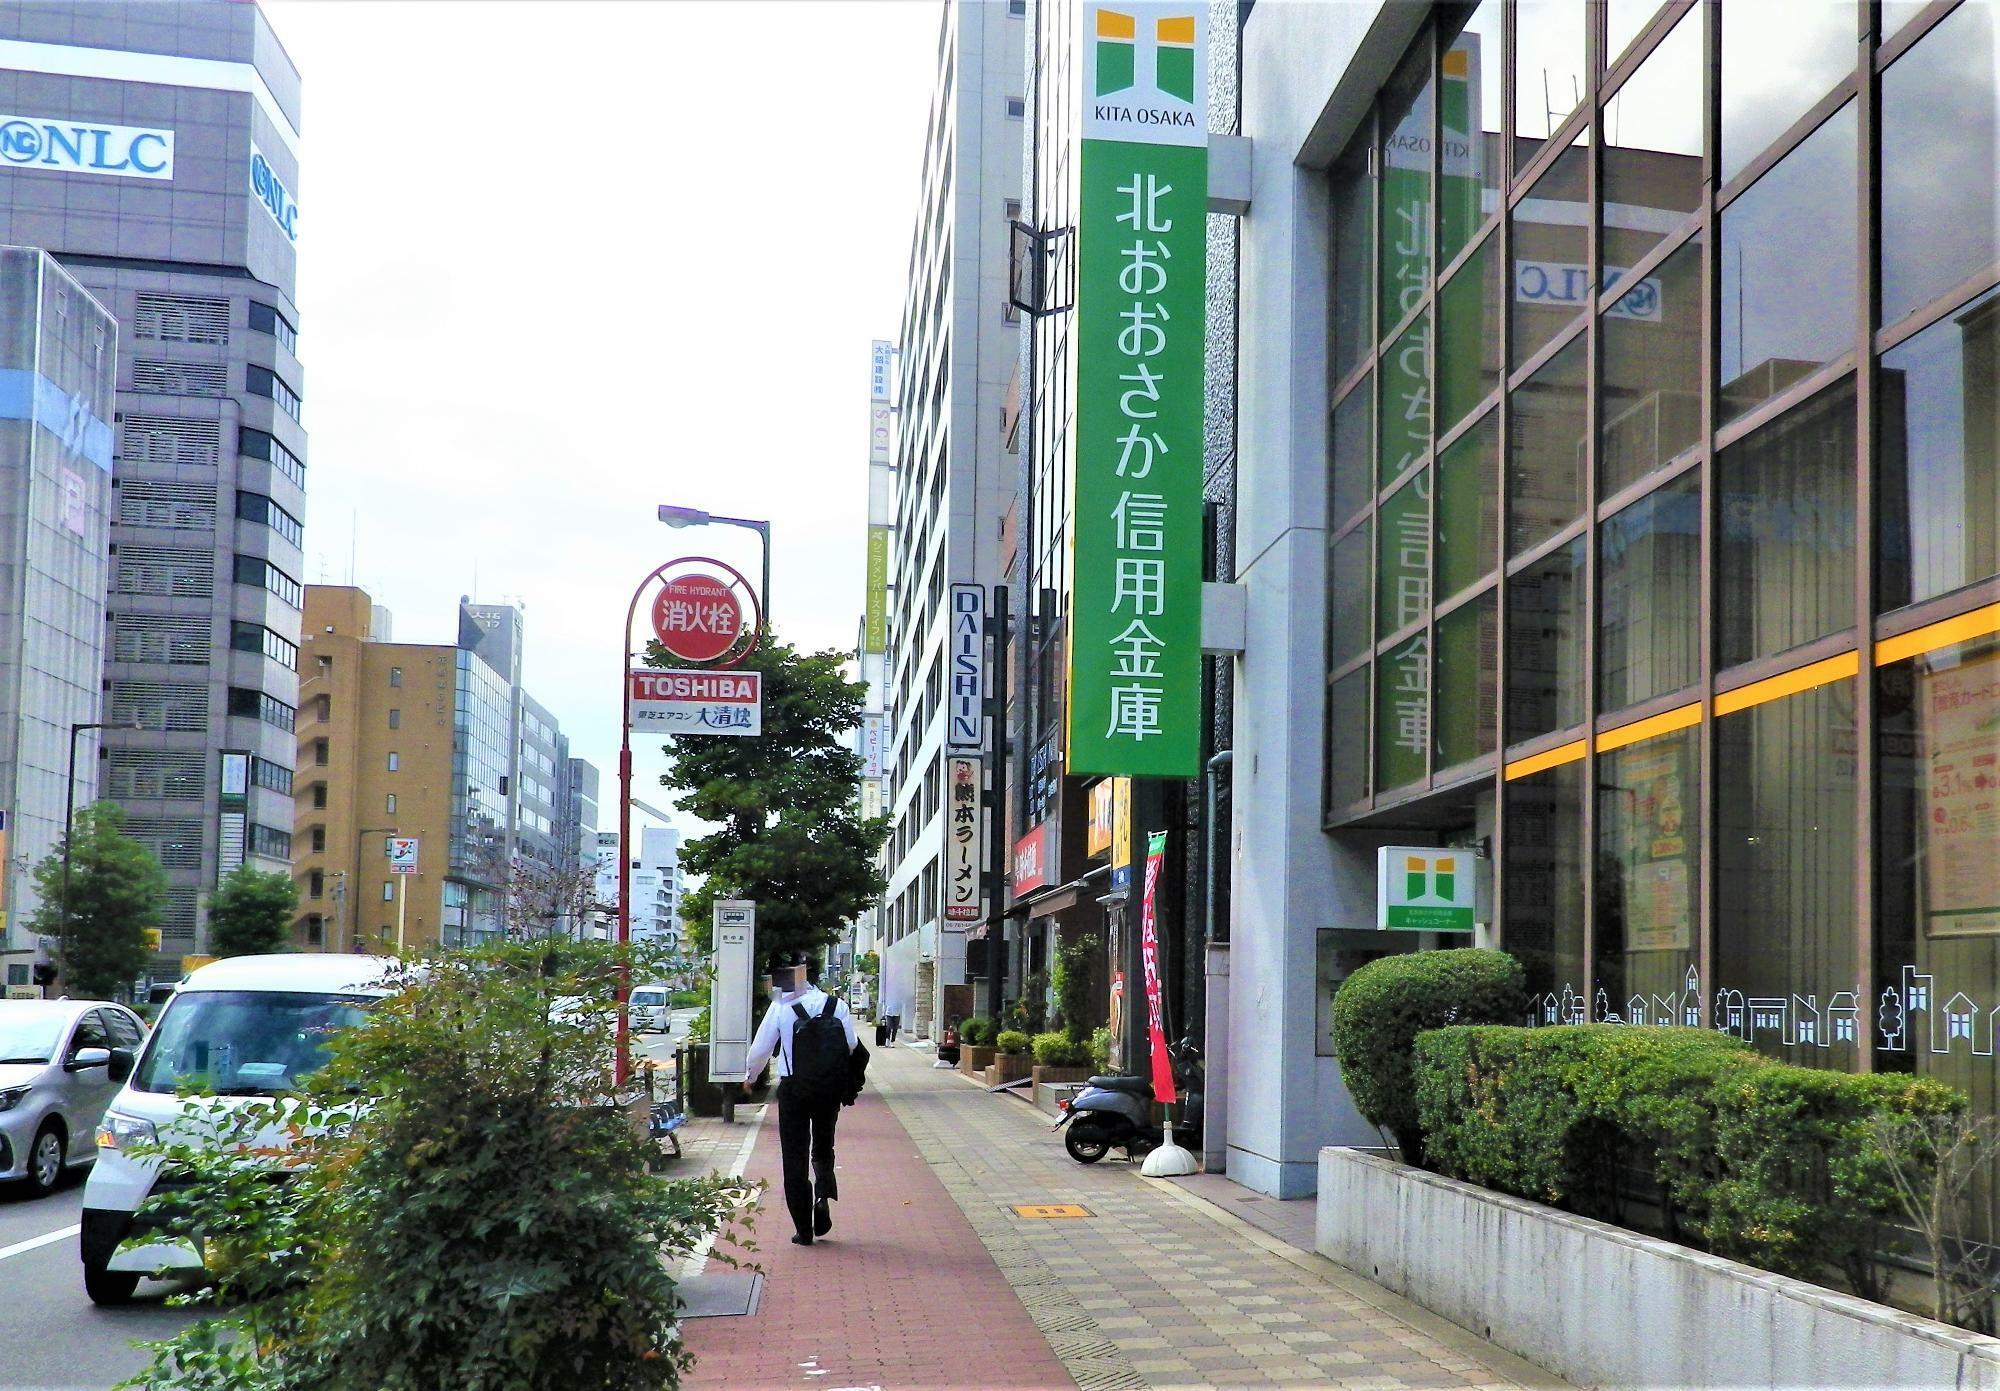 隣に北大阪信用金庫があり、分かりやすい場所です。